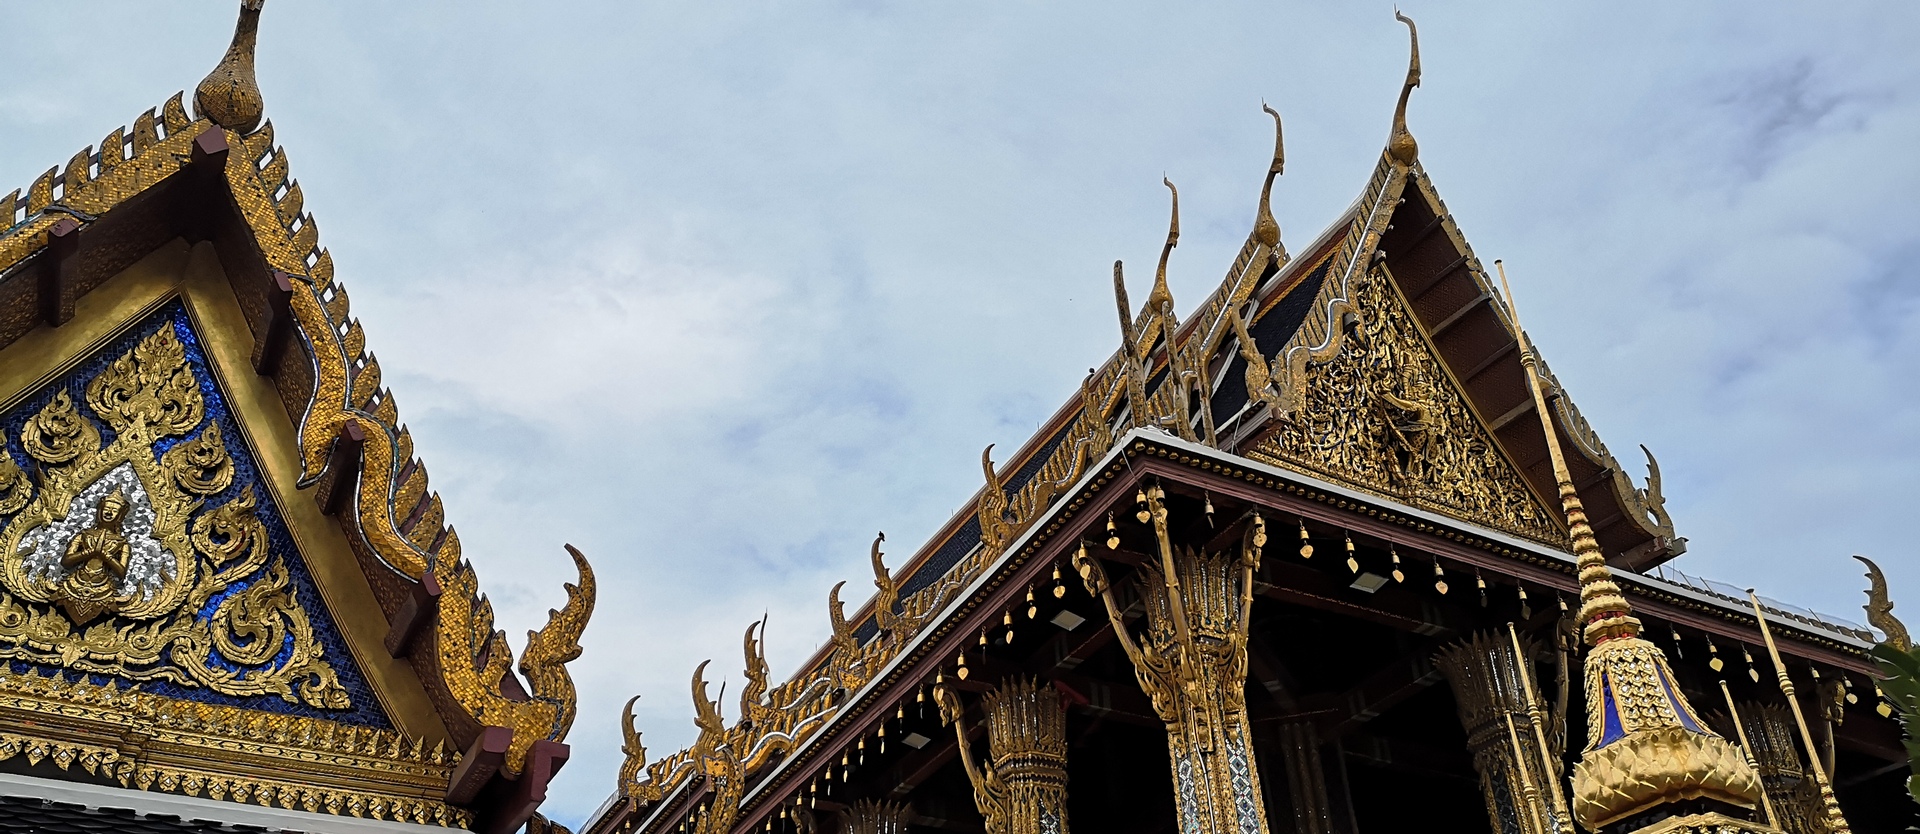 Kliment_Thailand_banner